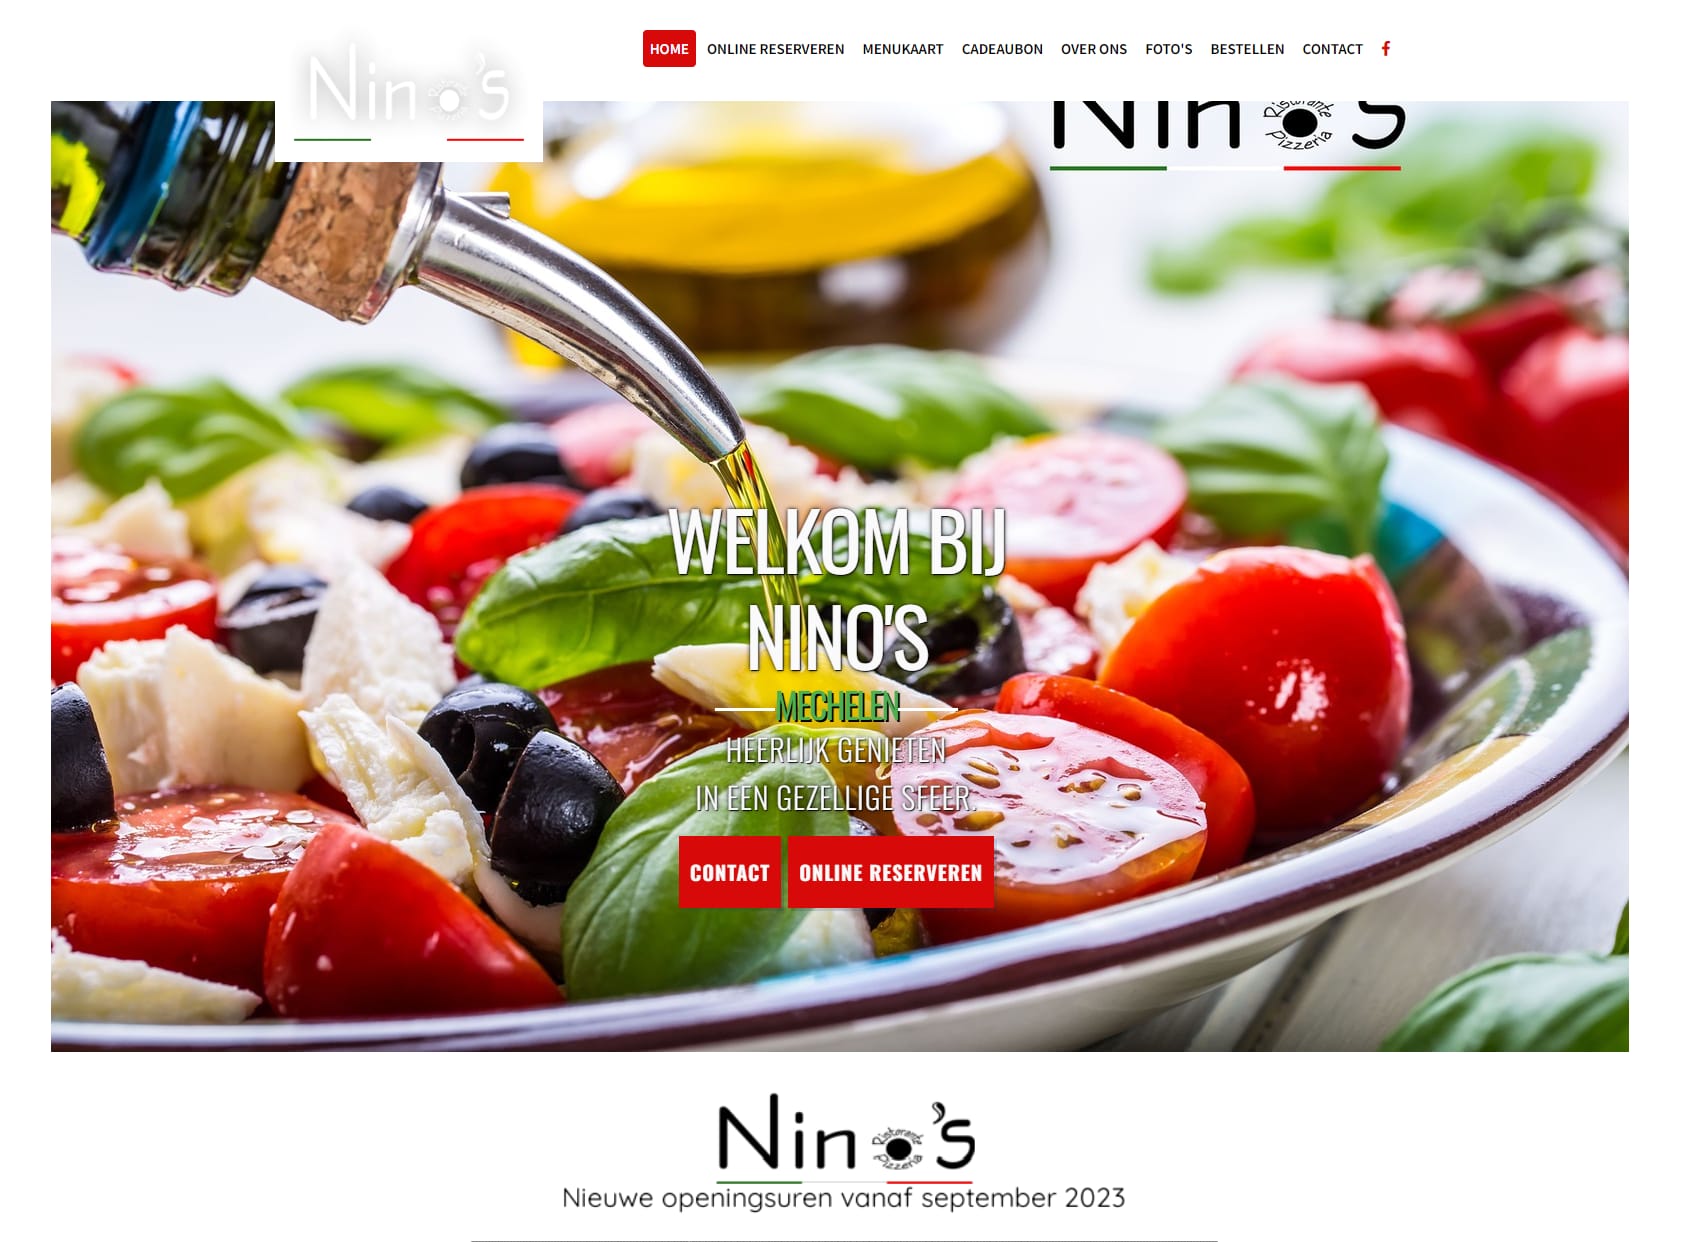 Nino's